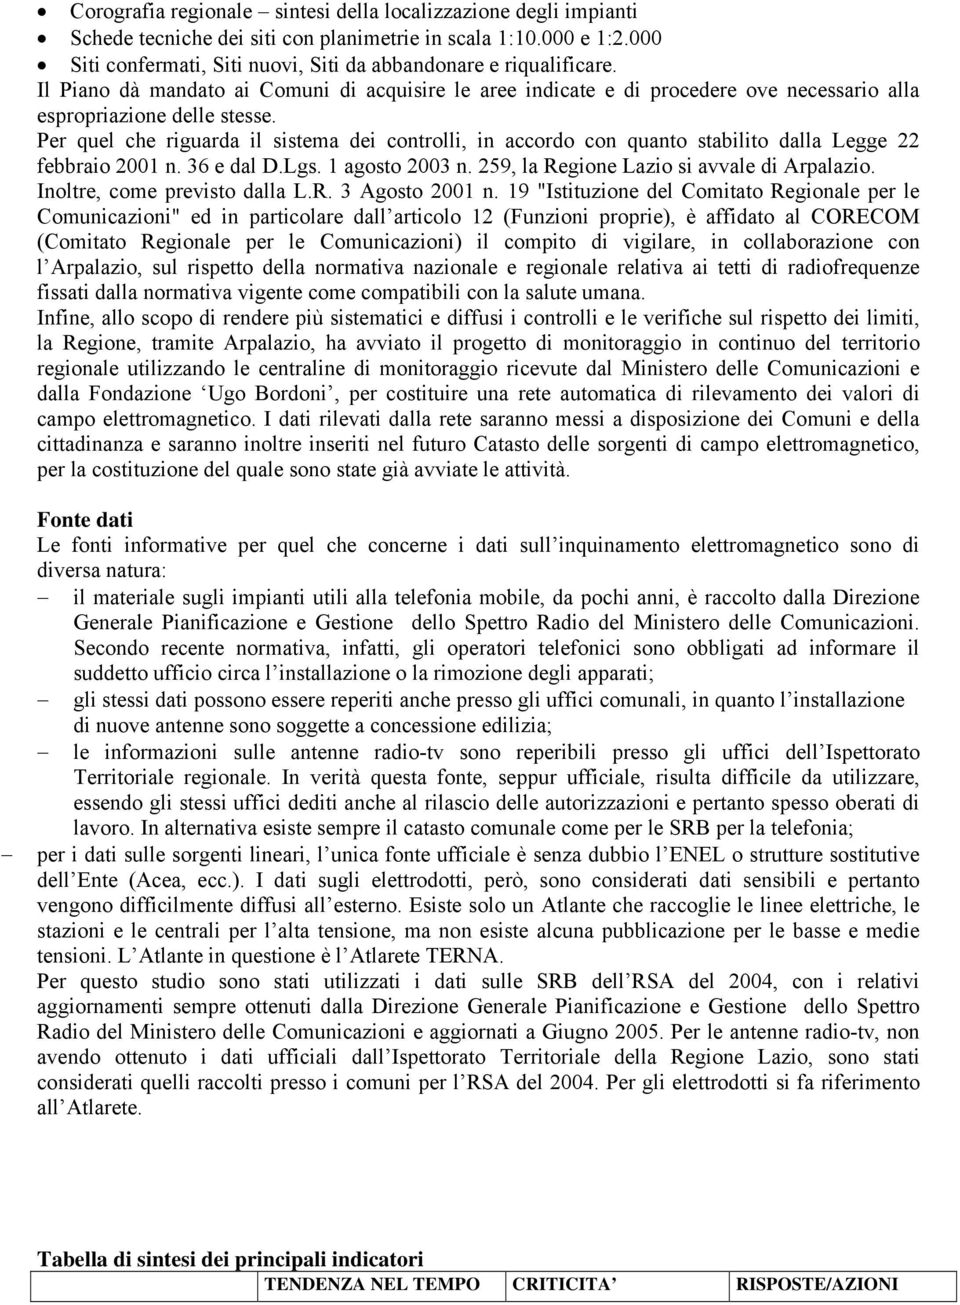 Per quel che riguarda il sistema dei controlli, in accordo con quanto stabilito dalla Legge 22 febbraio 2001 n. 36 e dal D.Lgs. 1 agosto 2003 n. 259, la Regione Lazio si avvale di Arpalazio.